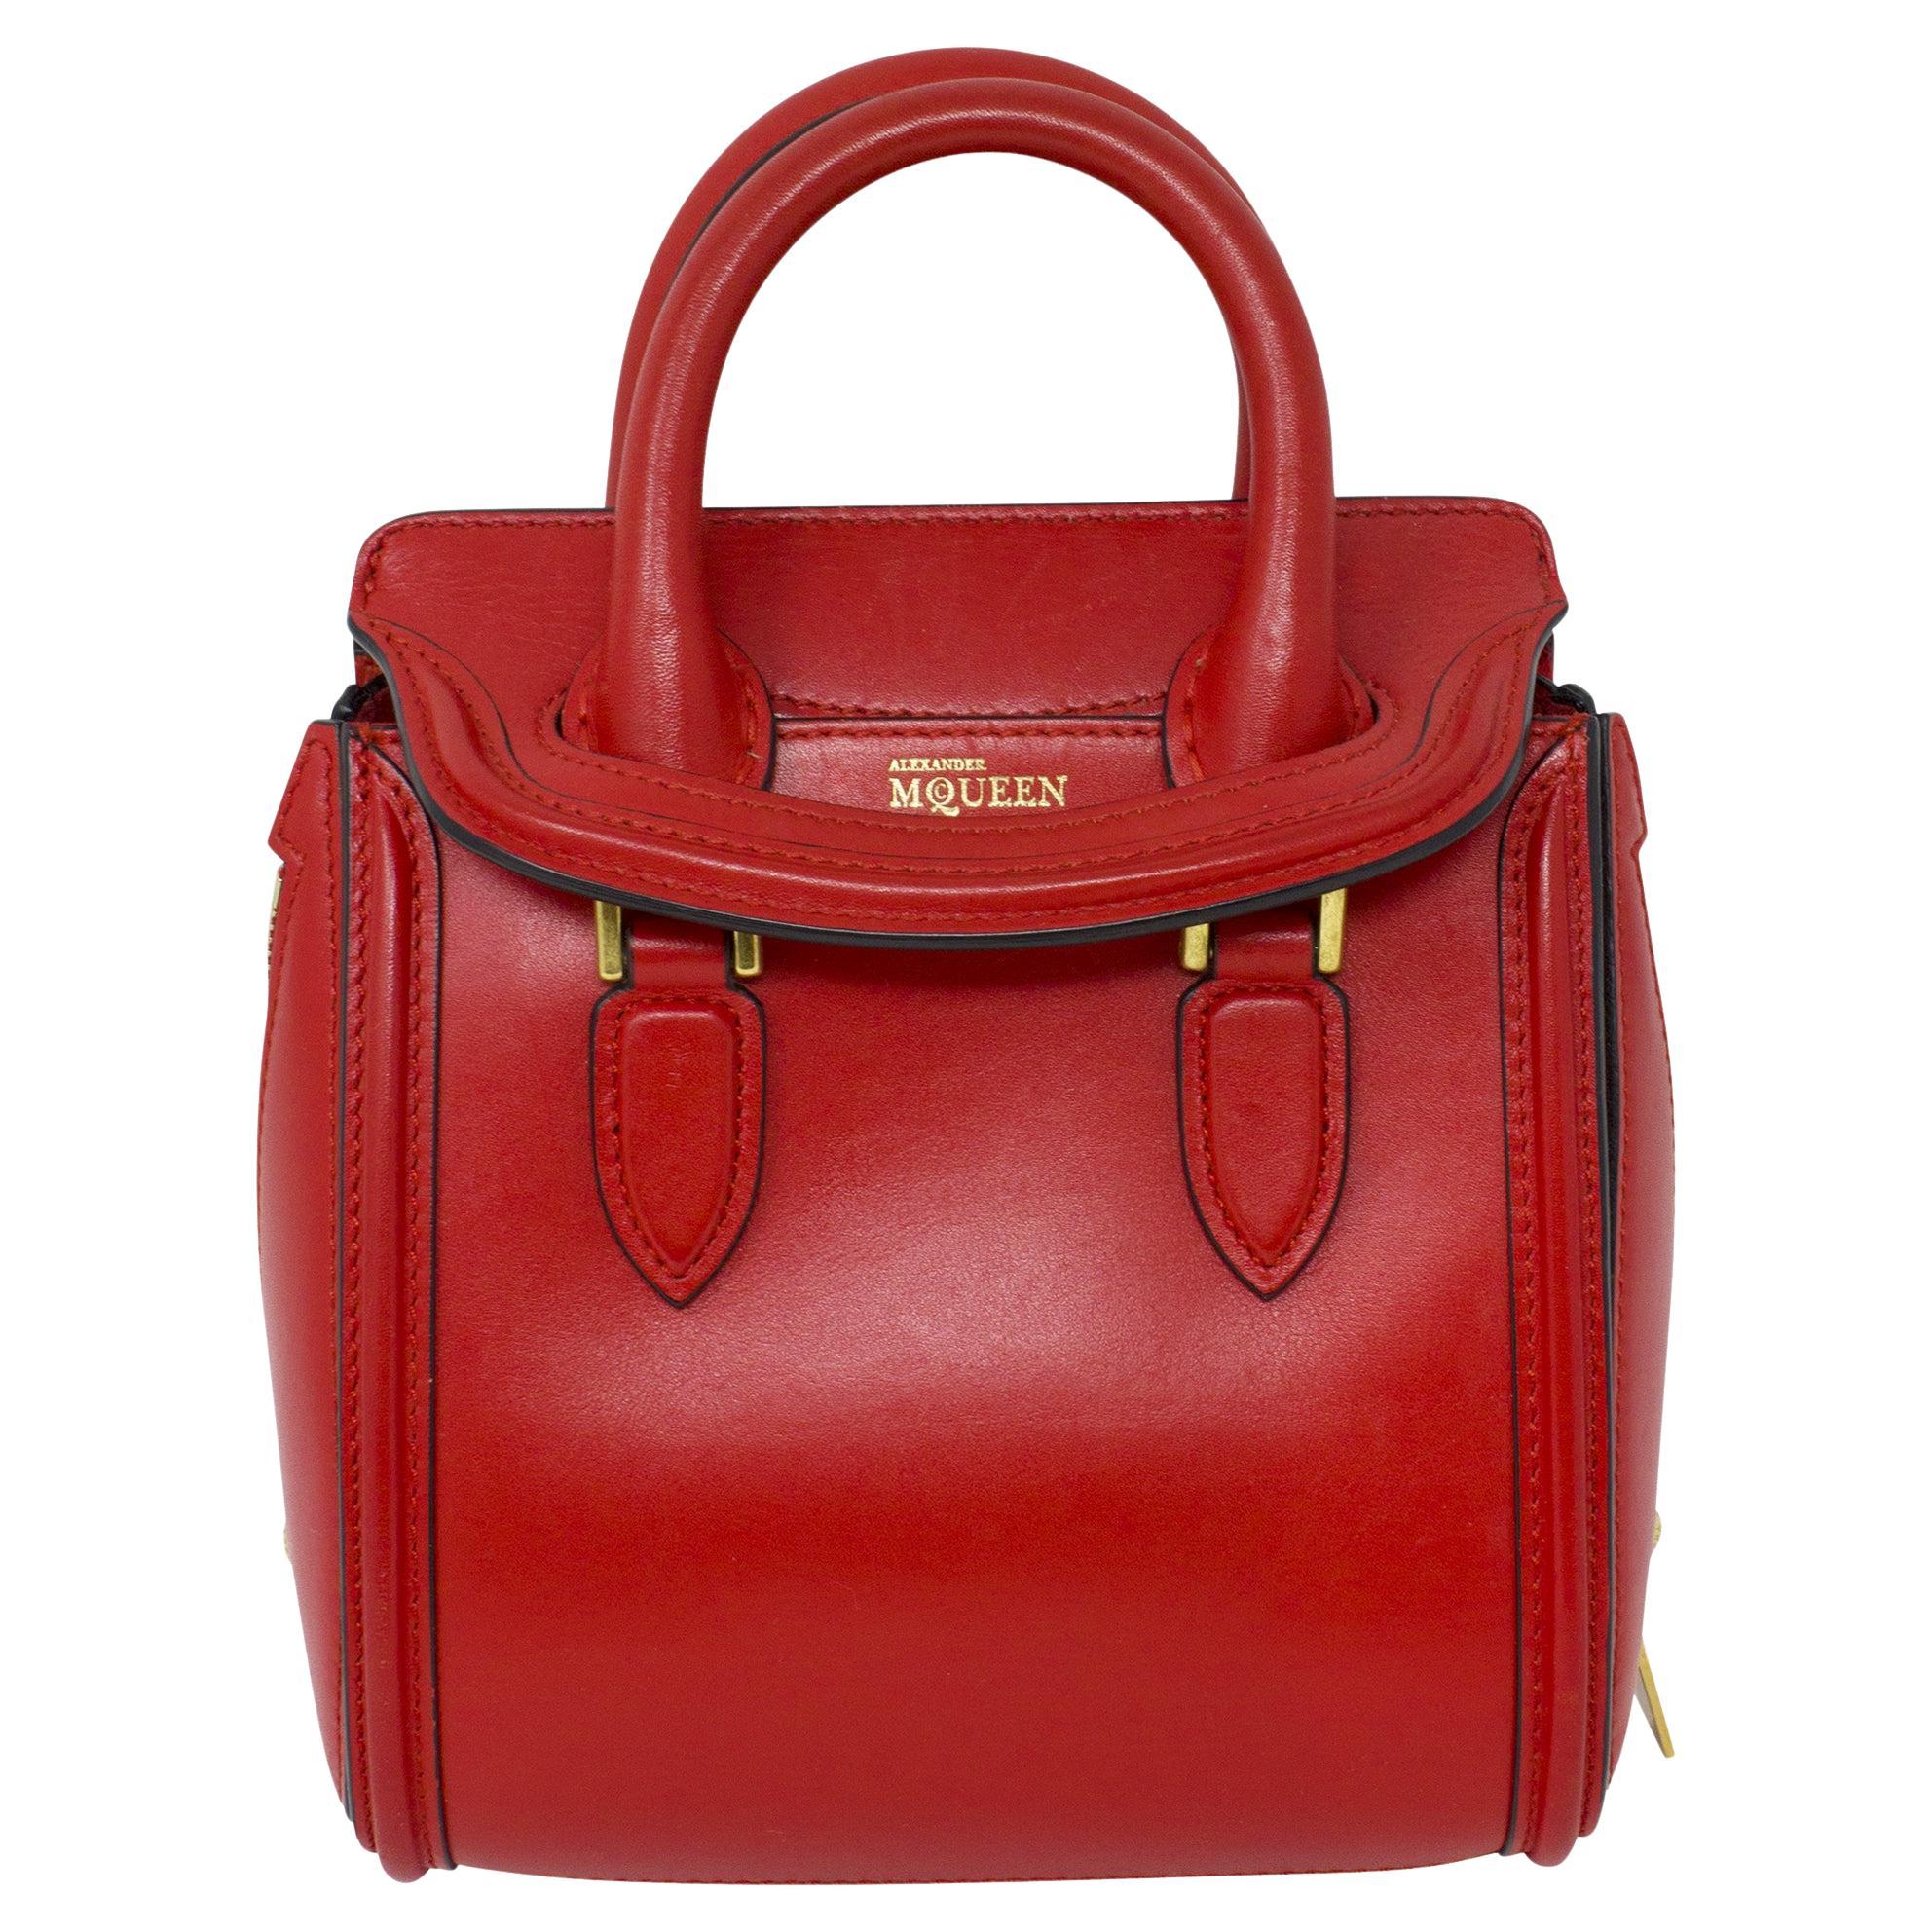 Alexander McQueen Red Top Handle Bag